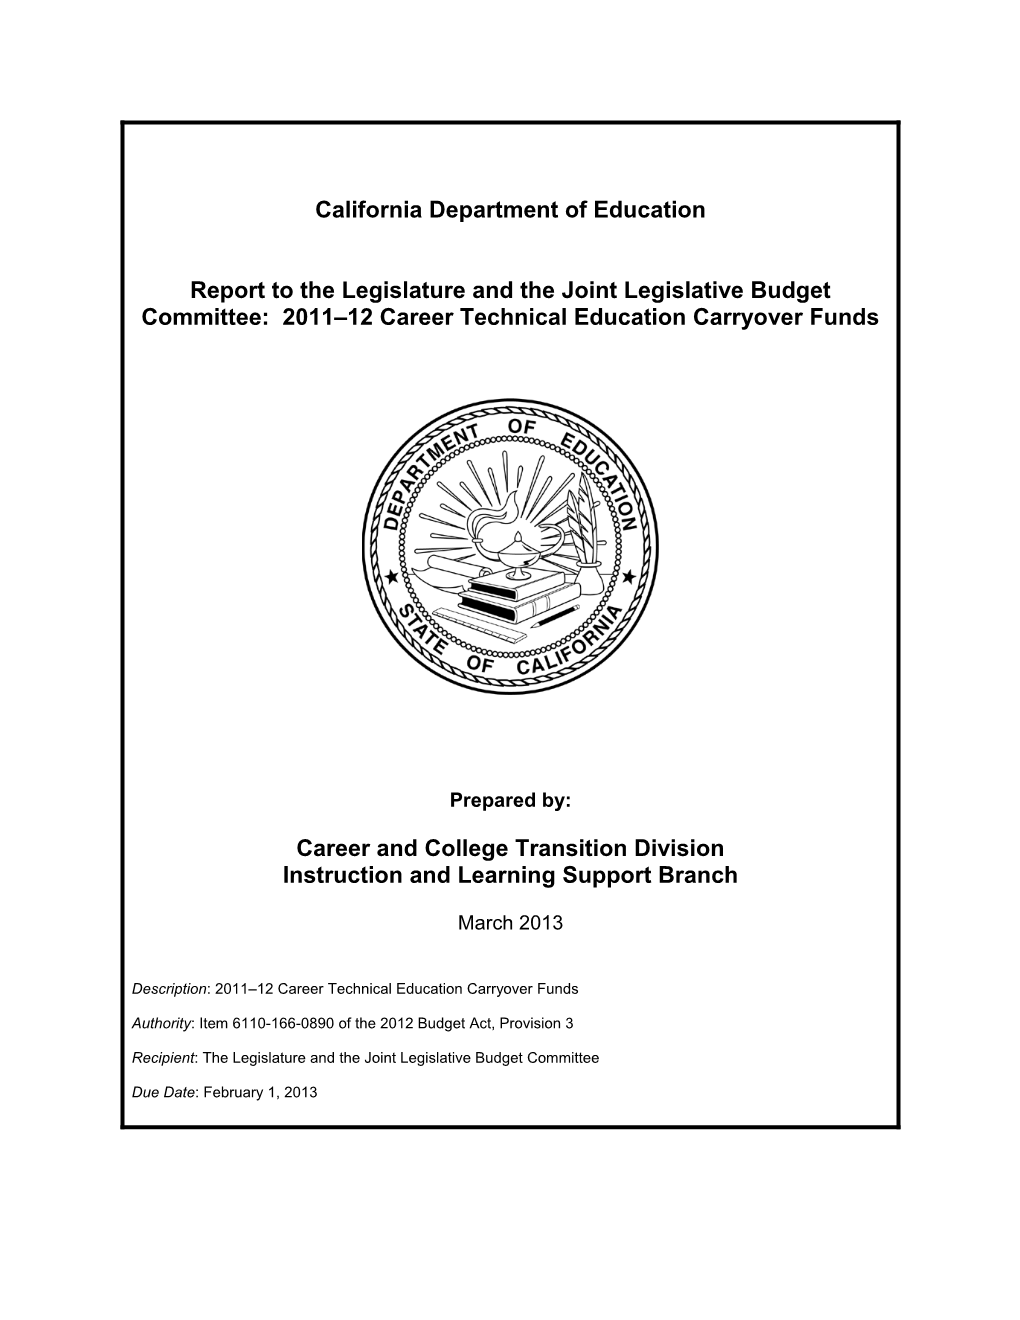 Legislative Report 2011-12 - Perkins (CA Dept of Education)